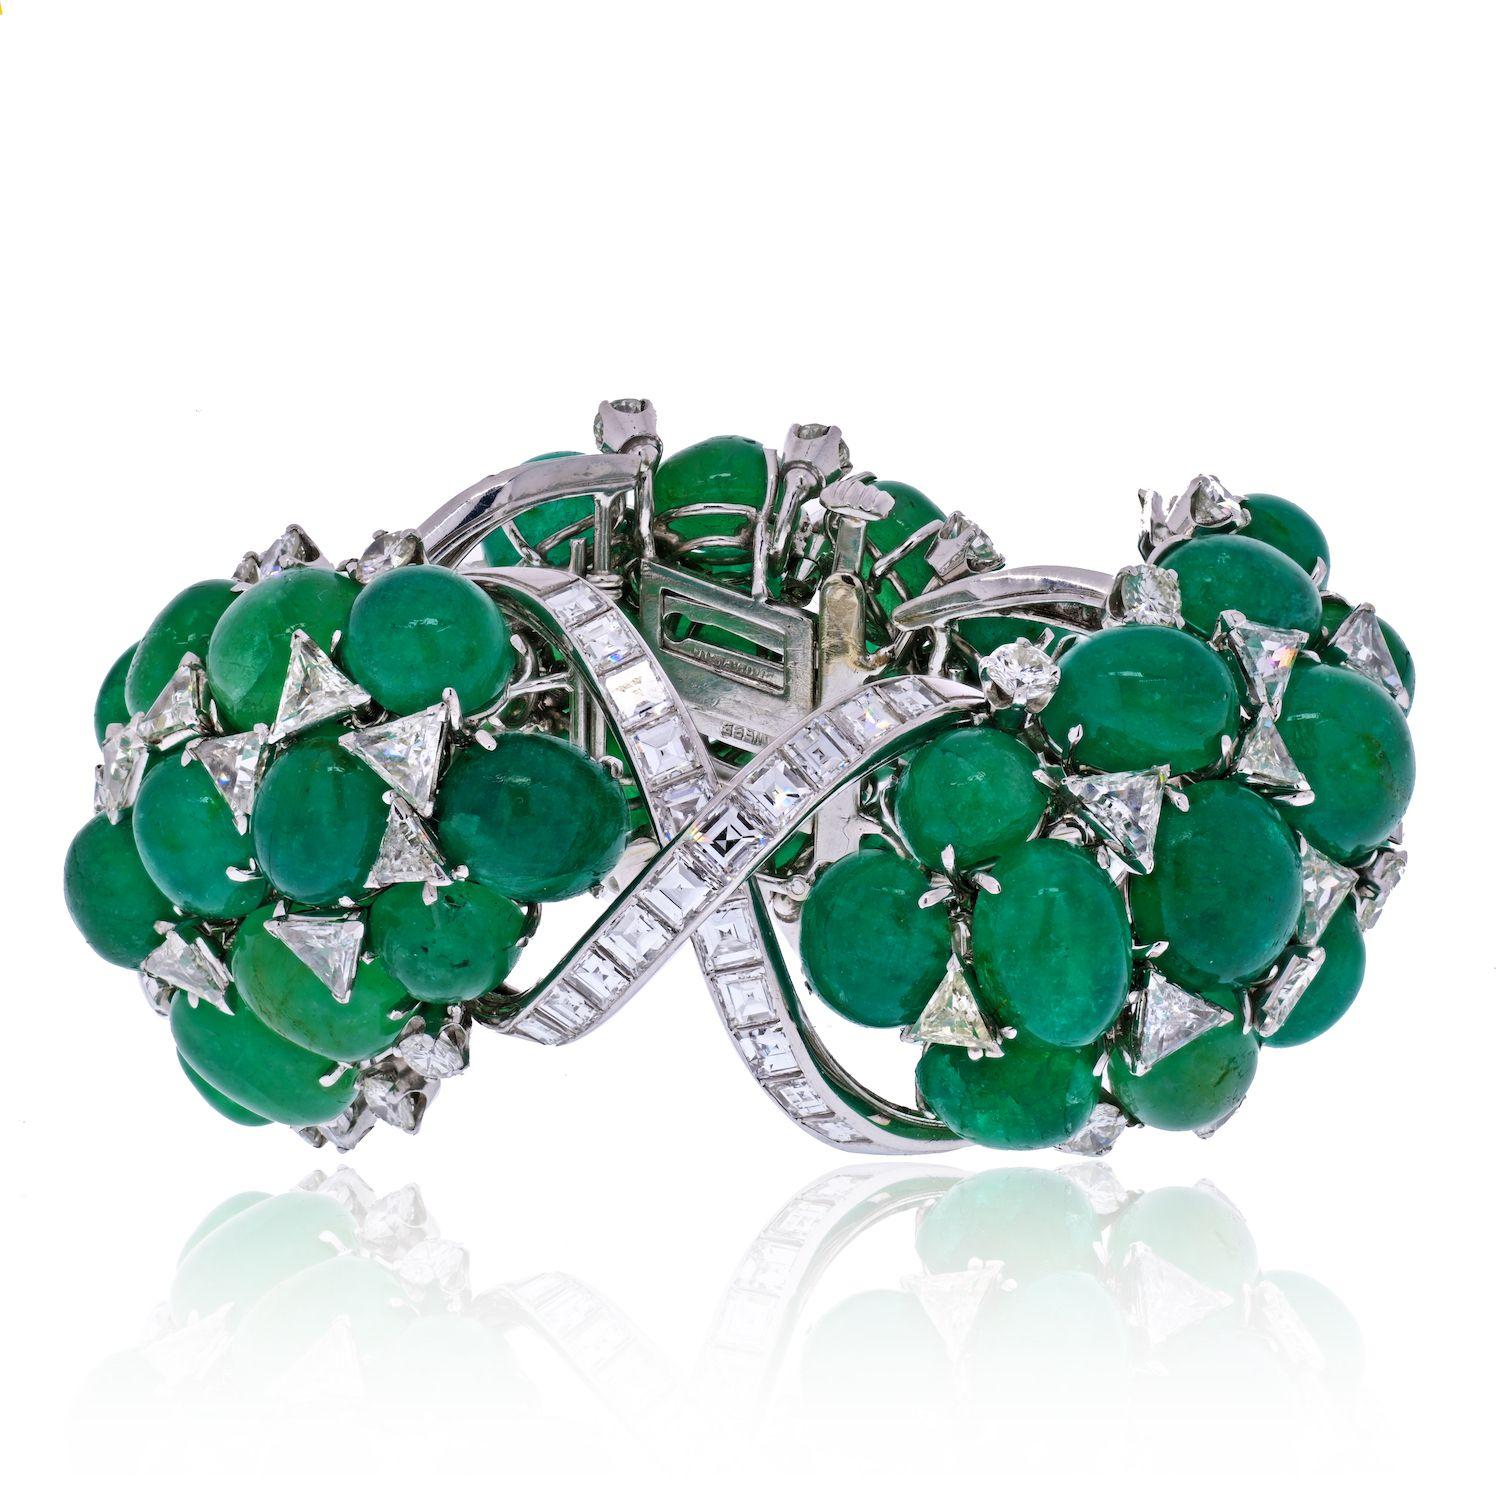 Bracelet flexible David Webb en platine avec émeraudes vertes et diamants.
La bande foliaire flexible, conçue comme une vigne de diamants trilobés et taillés en ligne droite, sertie d'émeraudes vertes cabochon lisses, accentuée par des diamants